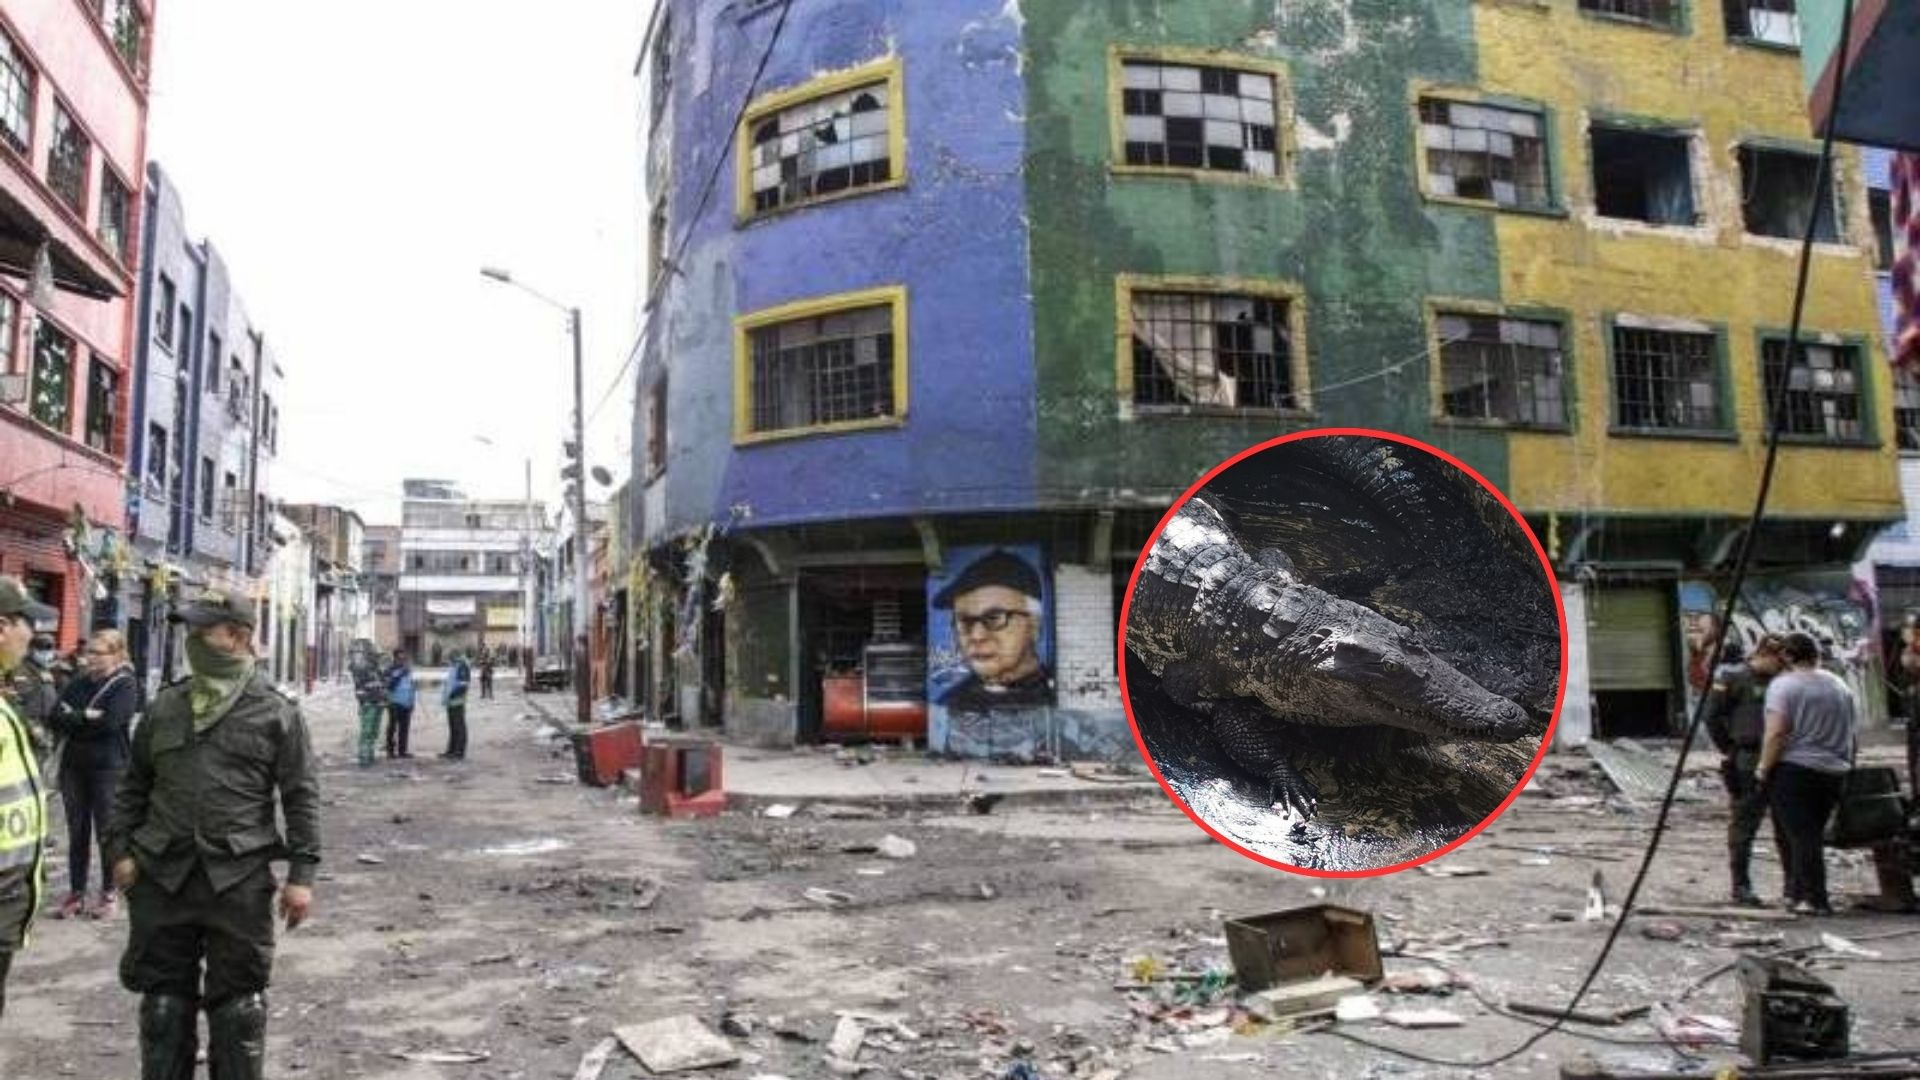 Filtran foto de 'Pepe', cocodrilo del Bronx de Bogotá que desaparecía víctimas